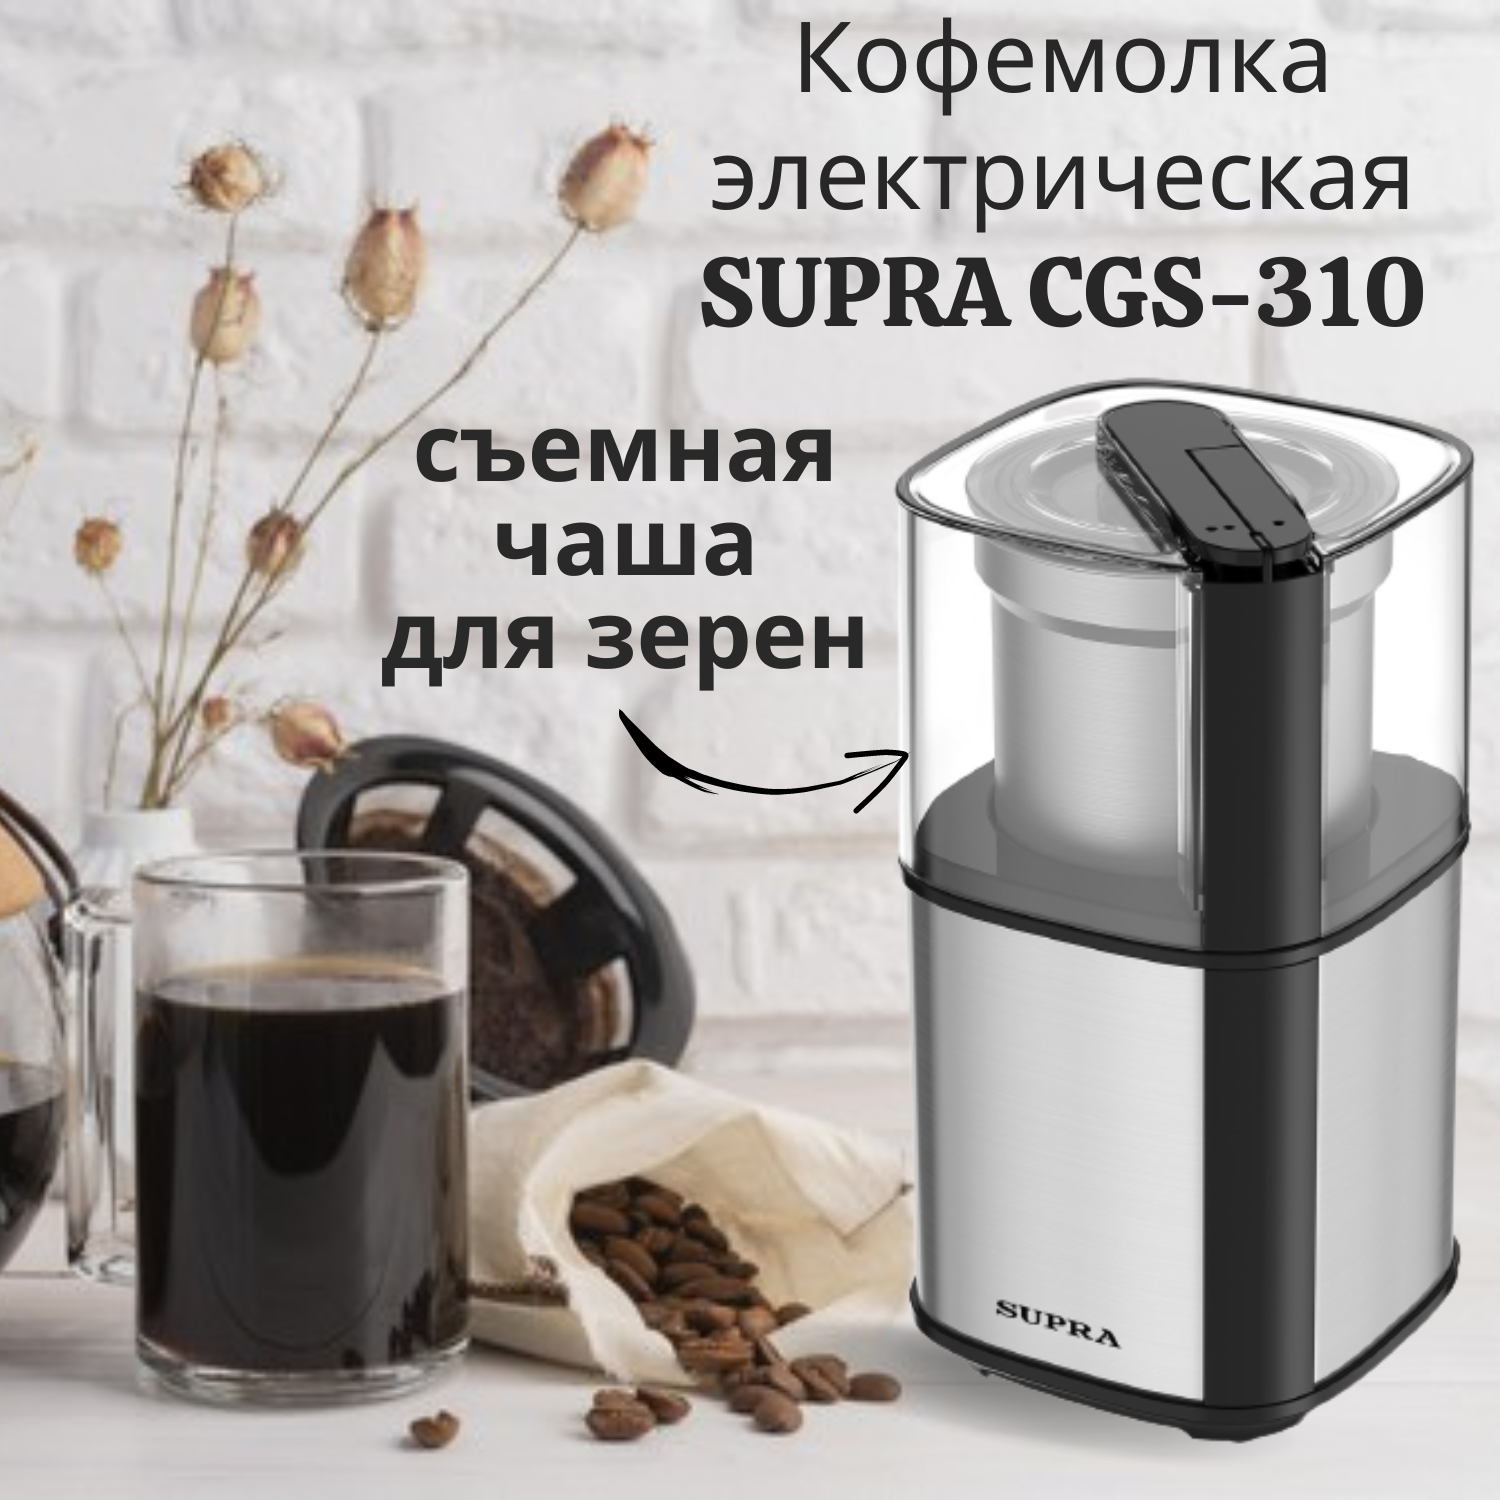 Кофемолка электрическая SUPRA CGS-310 со съемной чашей 300Вт